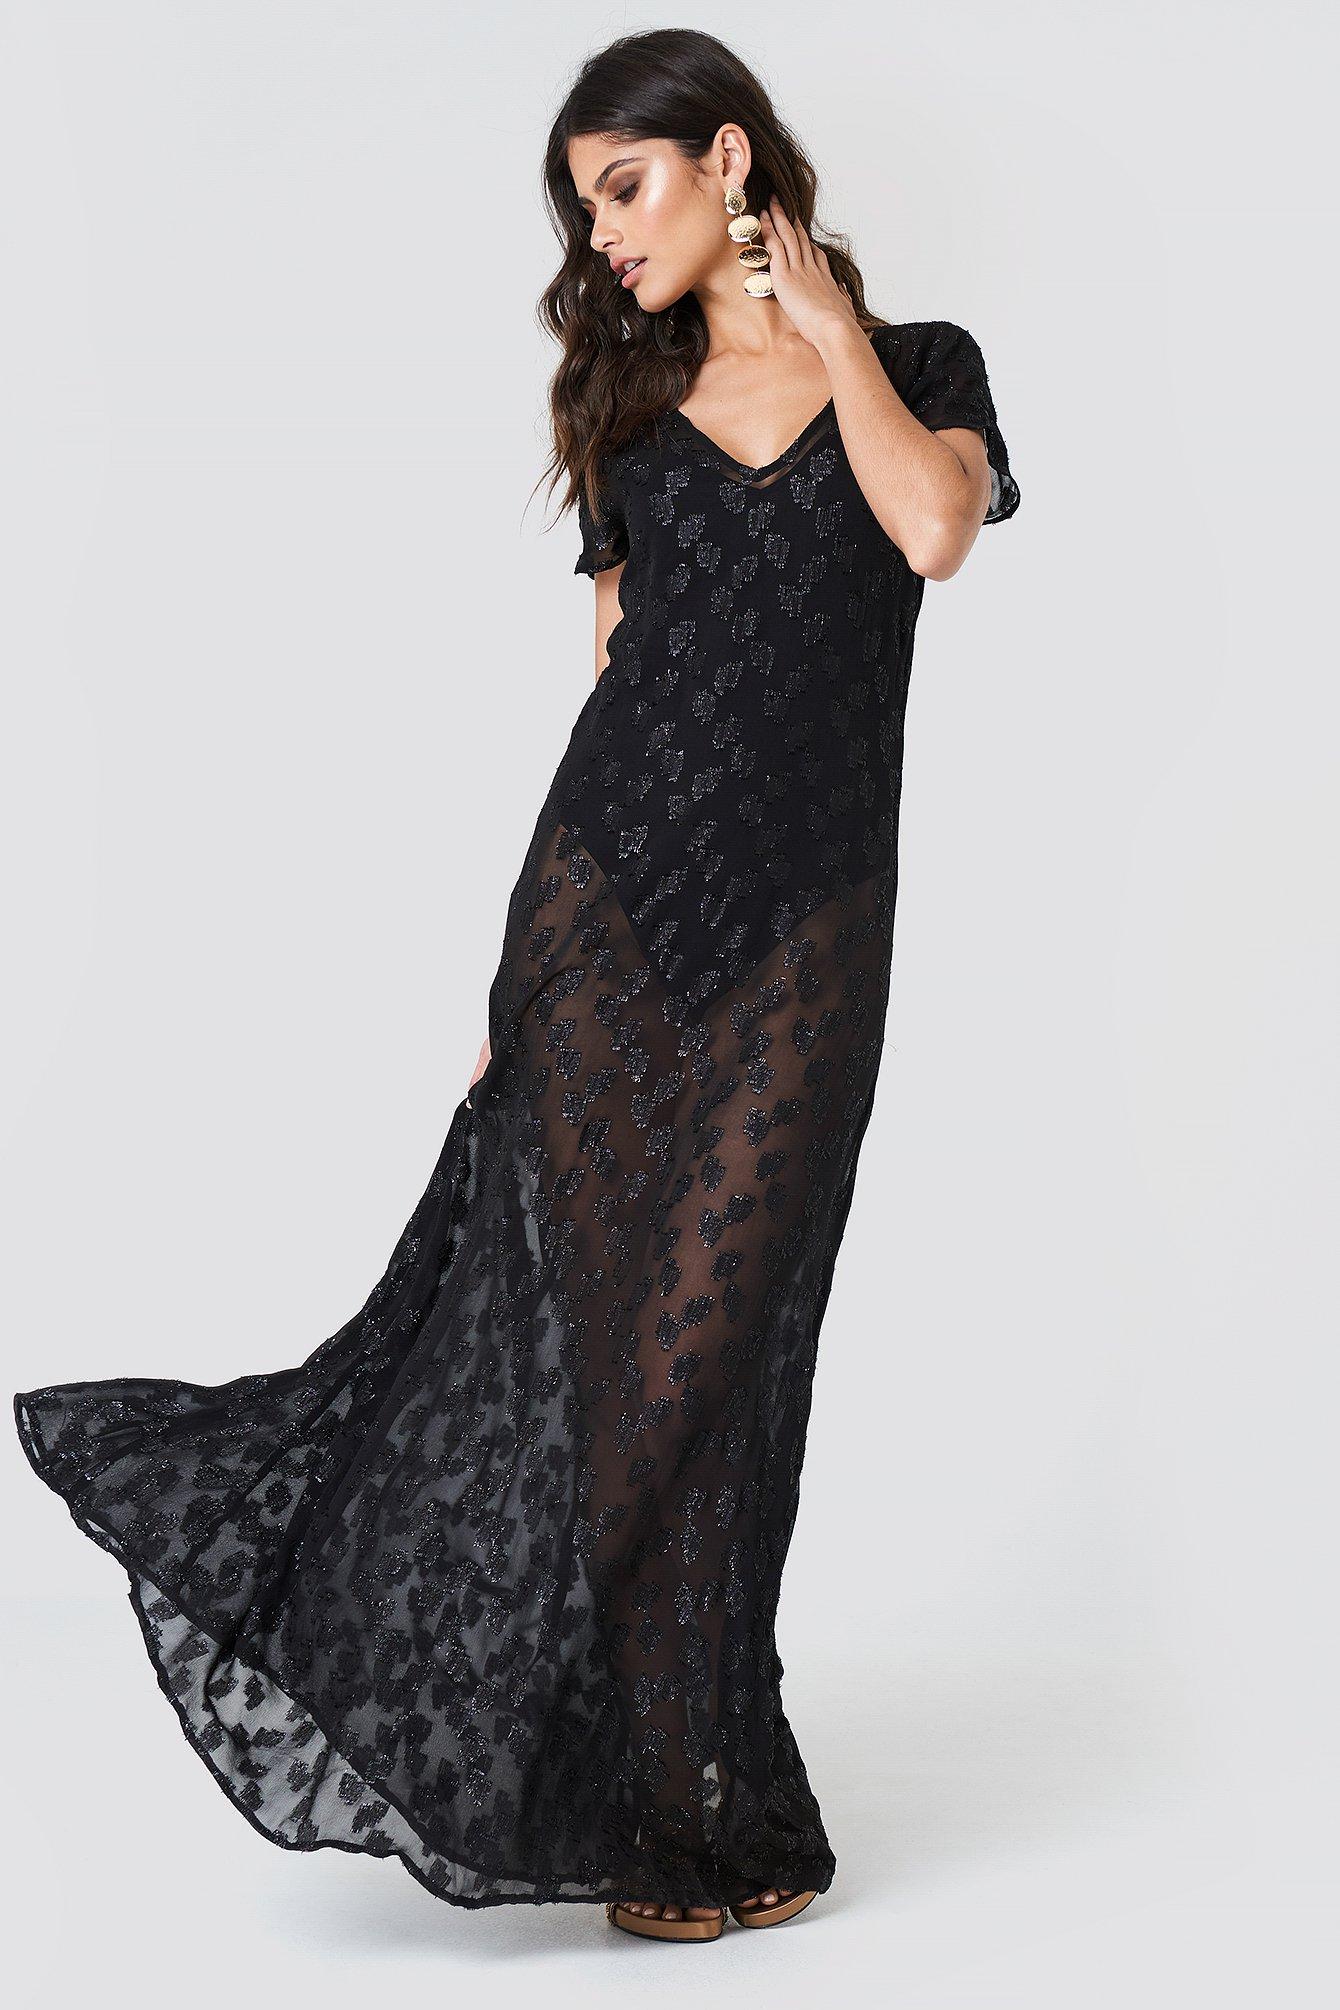 black sheer glitter dress